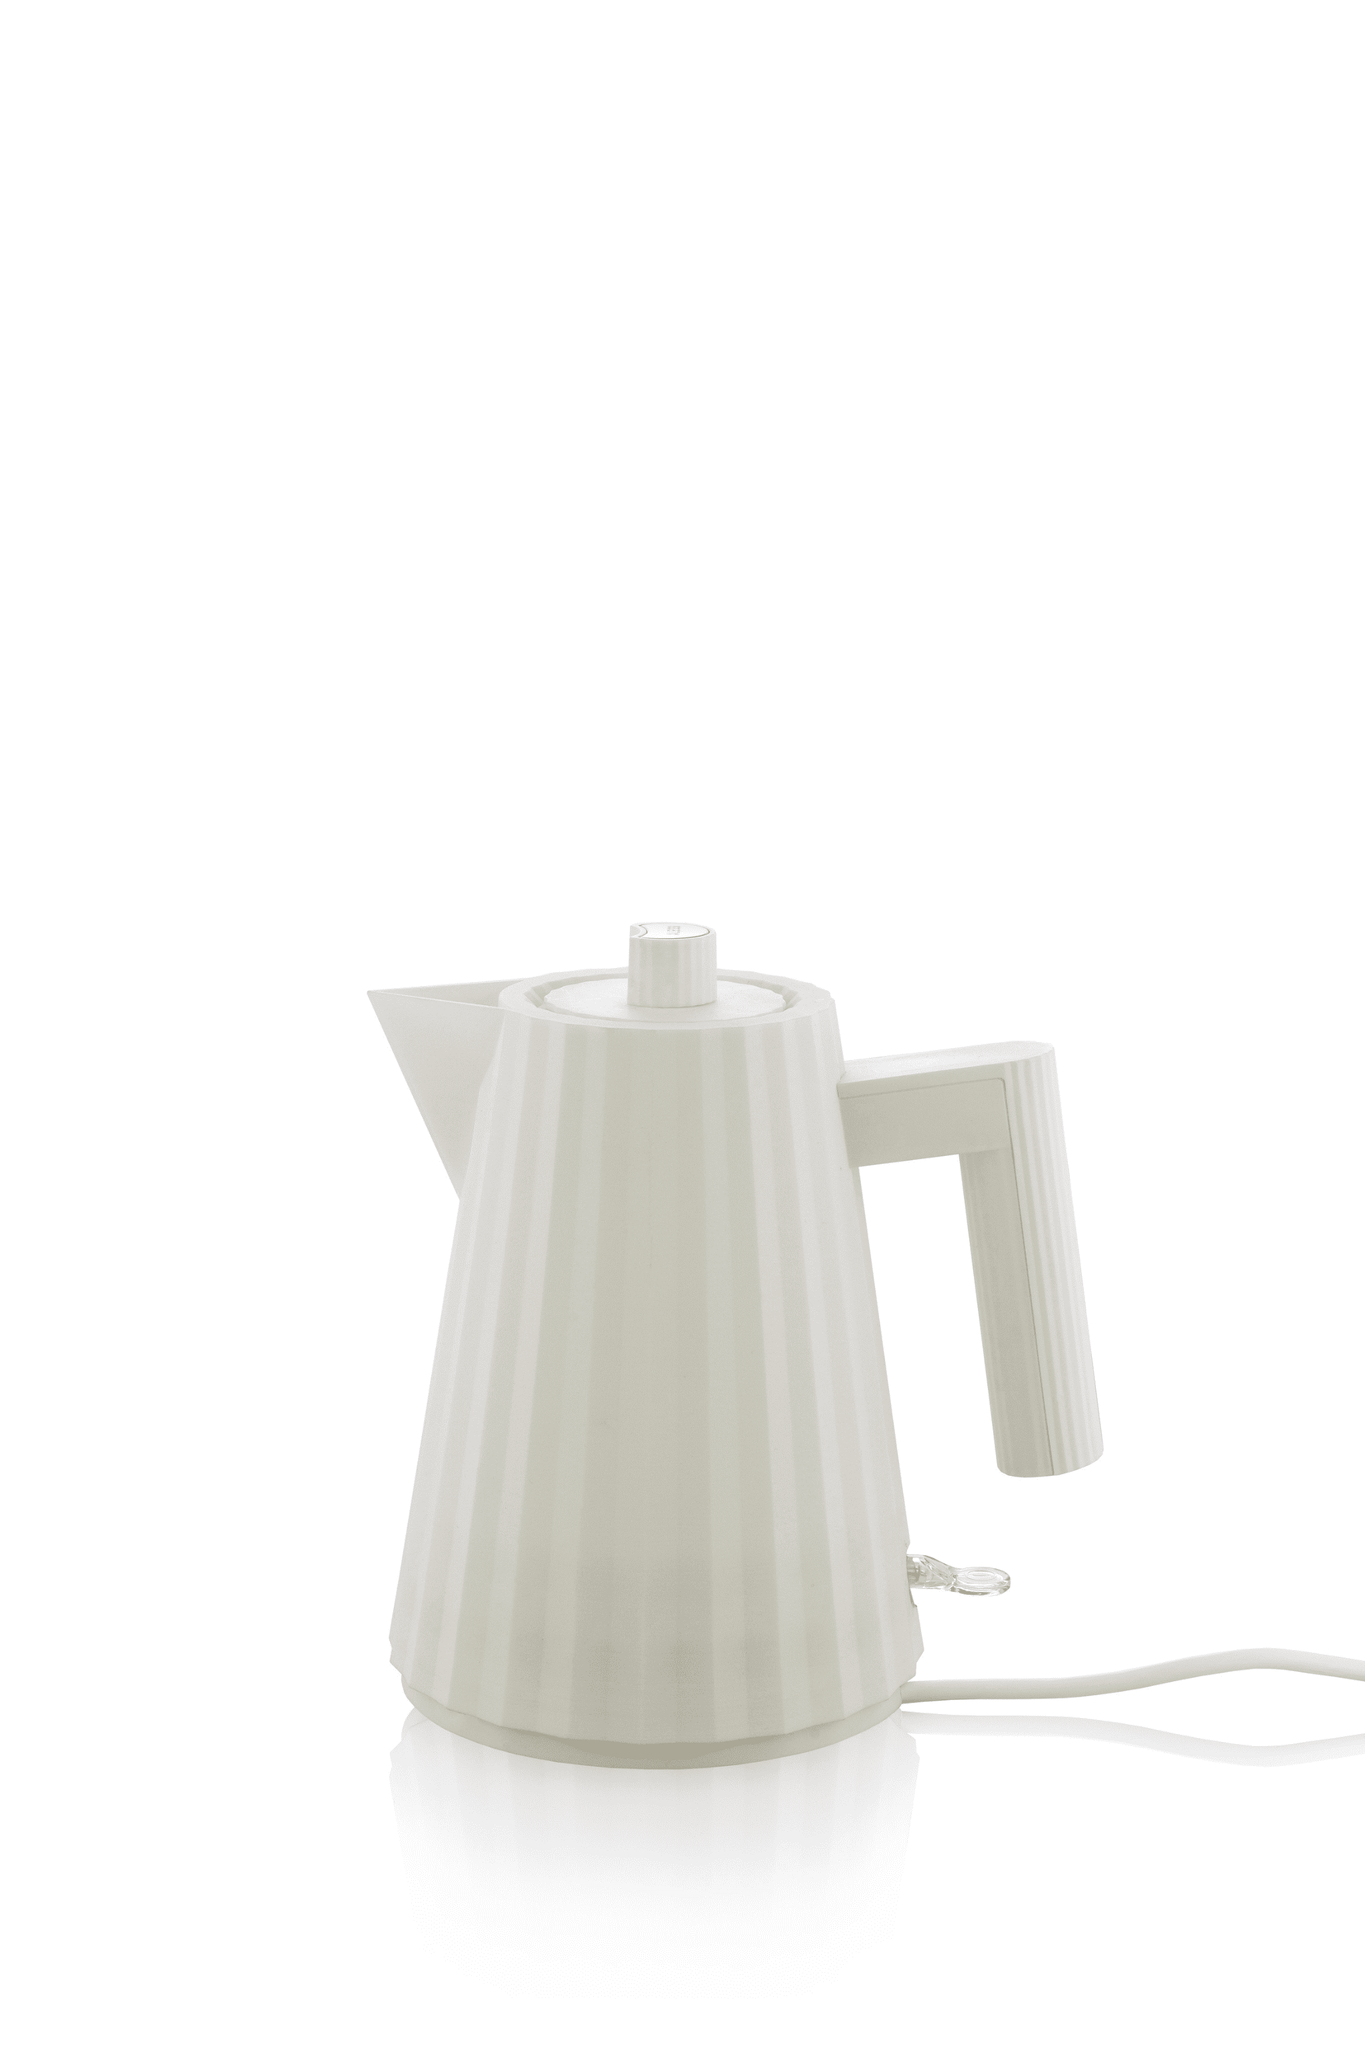 Plissé Electric Water Kettle, 1.0L - White